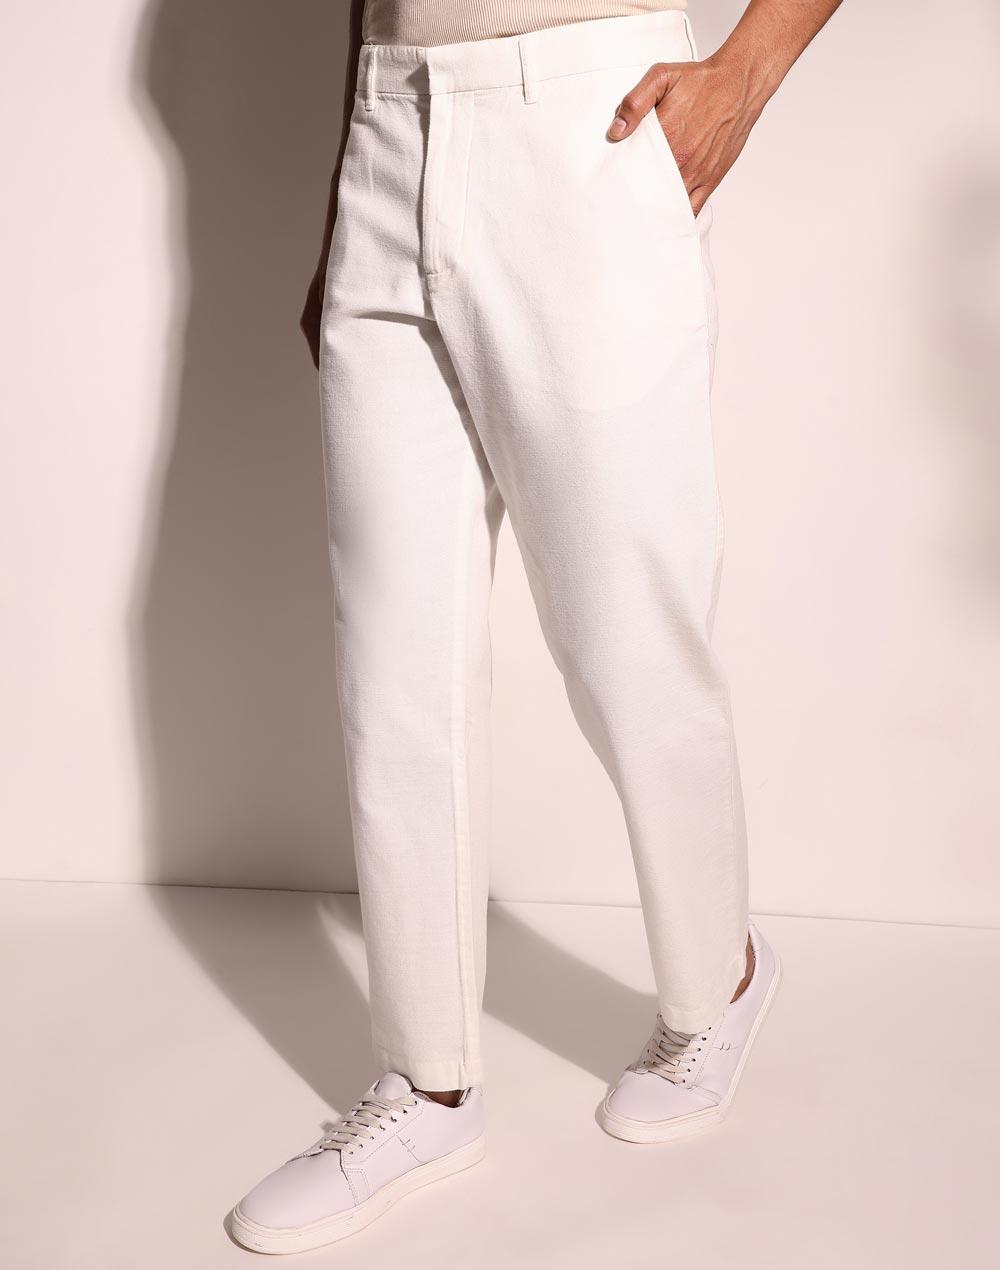 white cotton full length regular pant